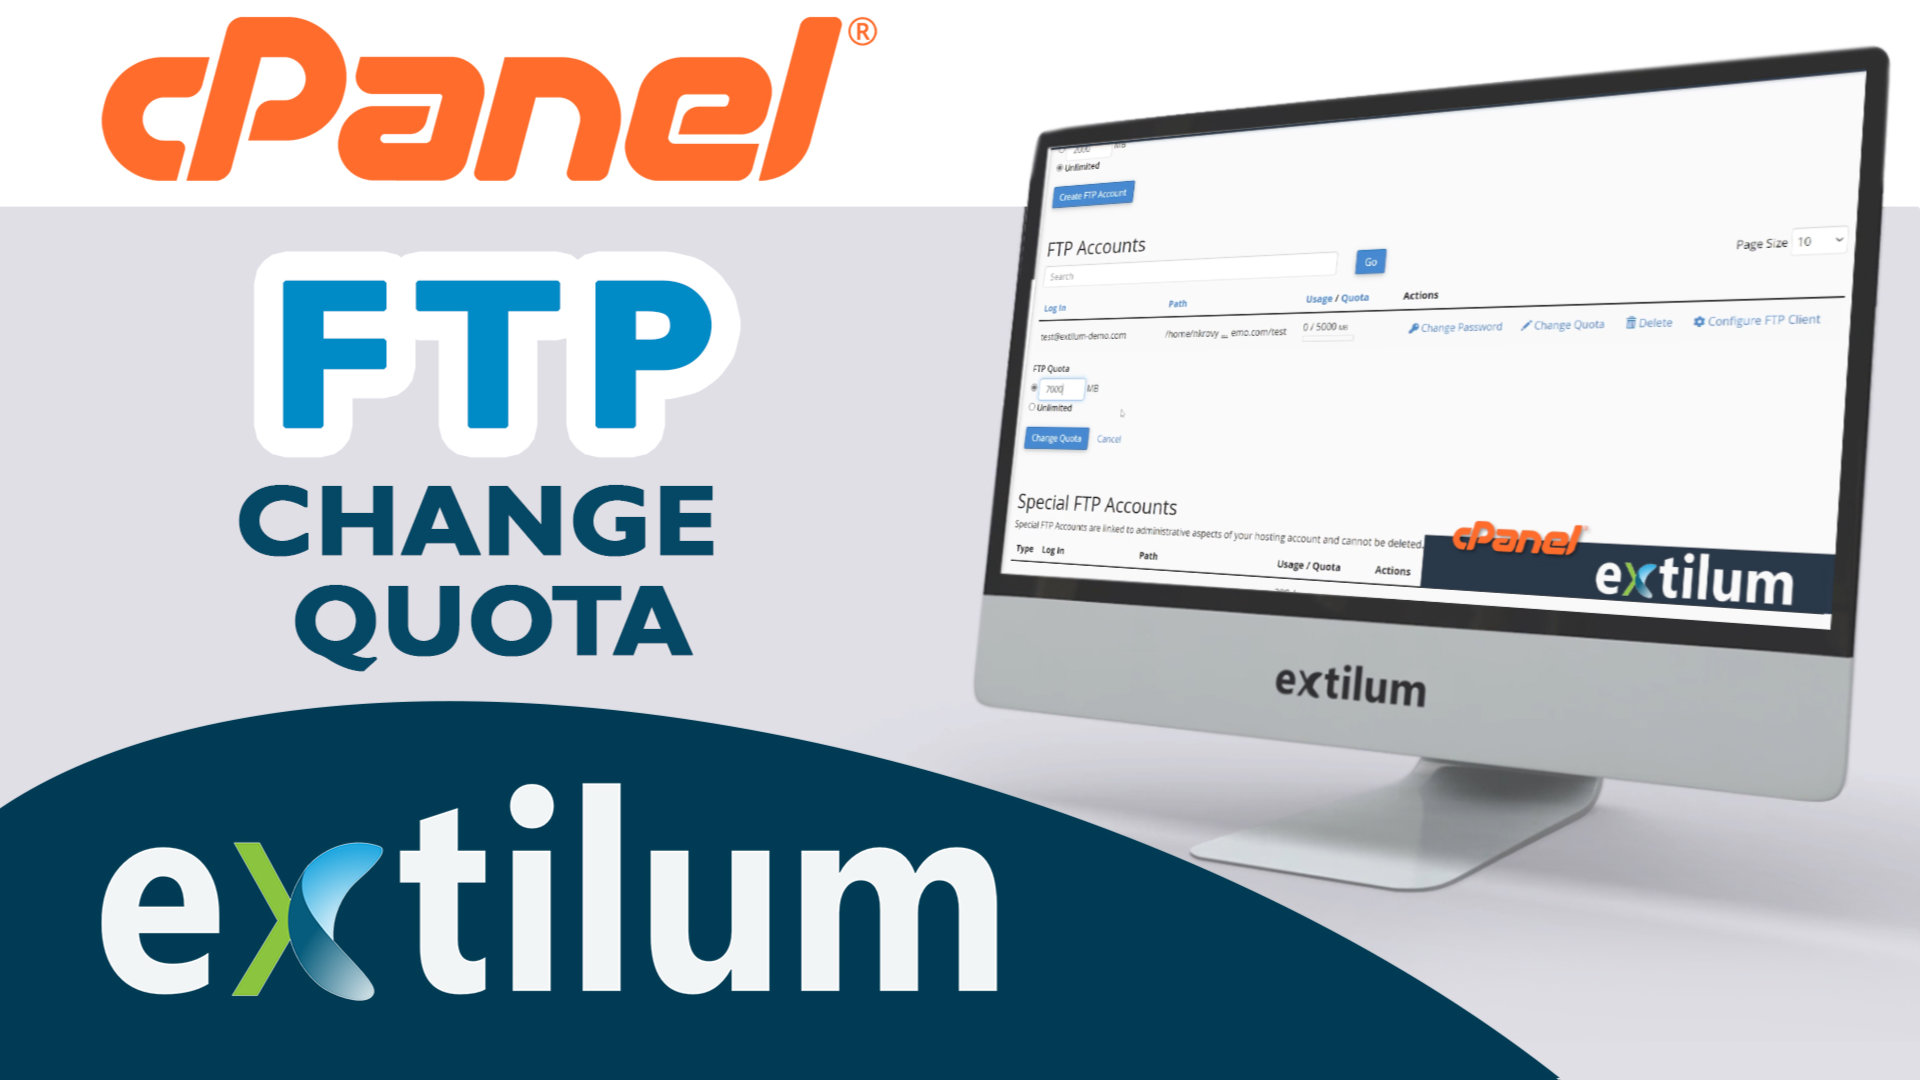 Extilum cpanel - ftp change quota